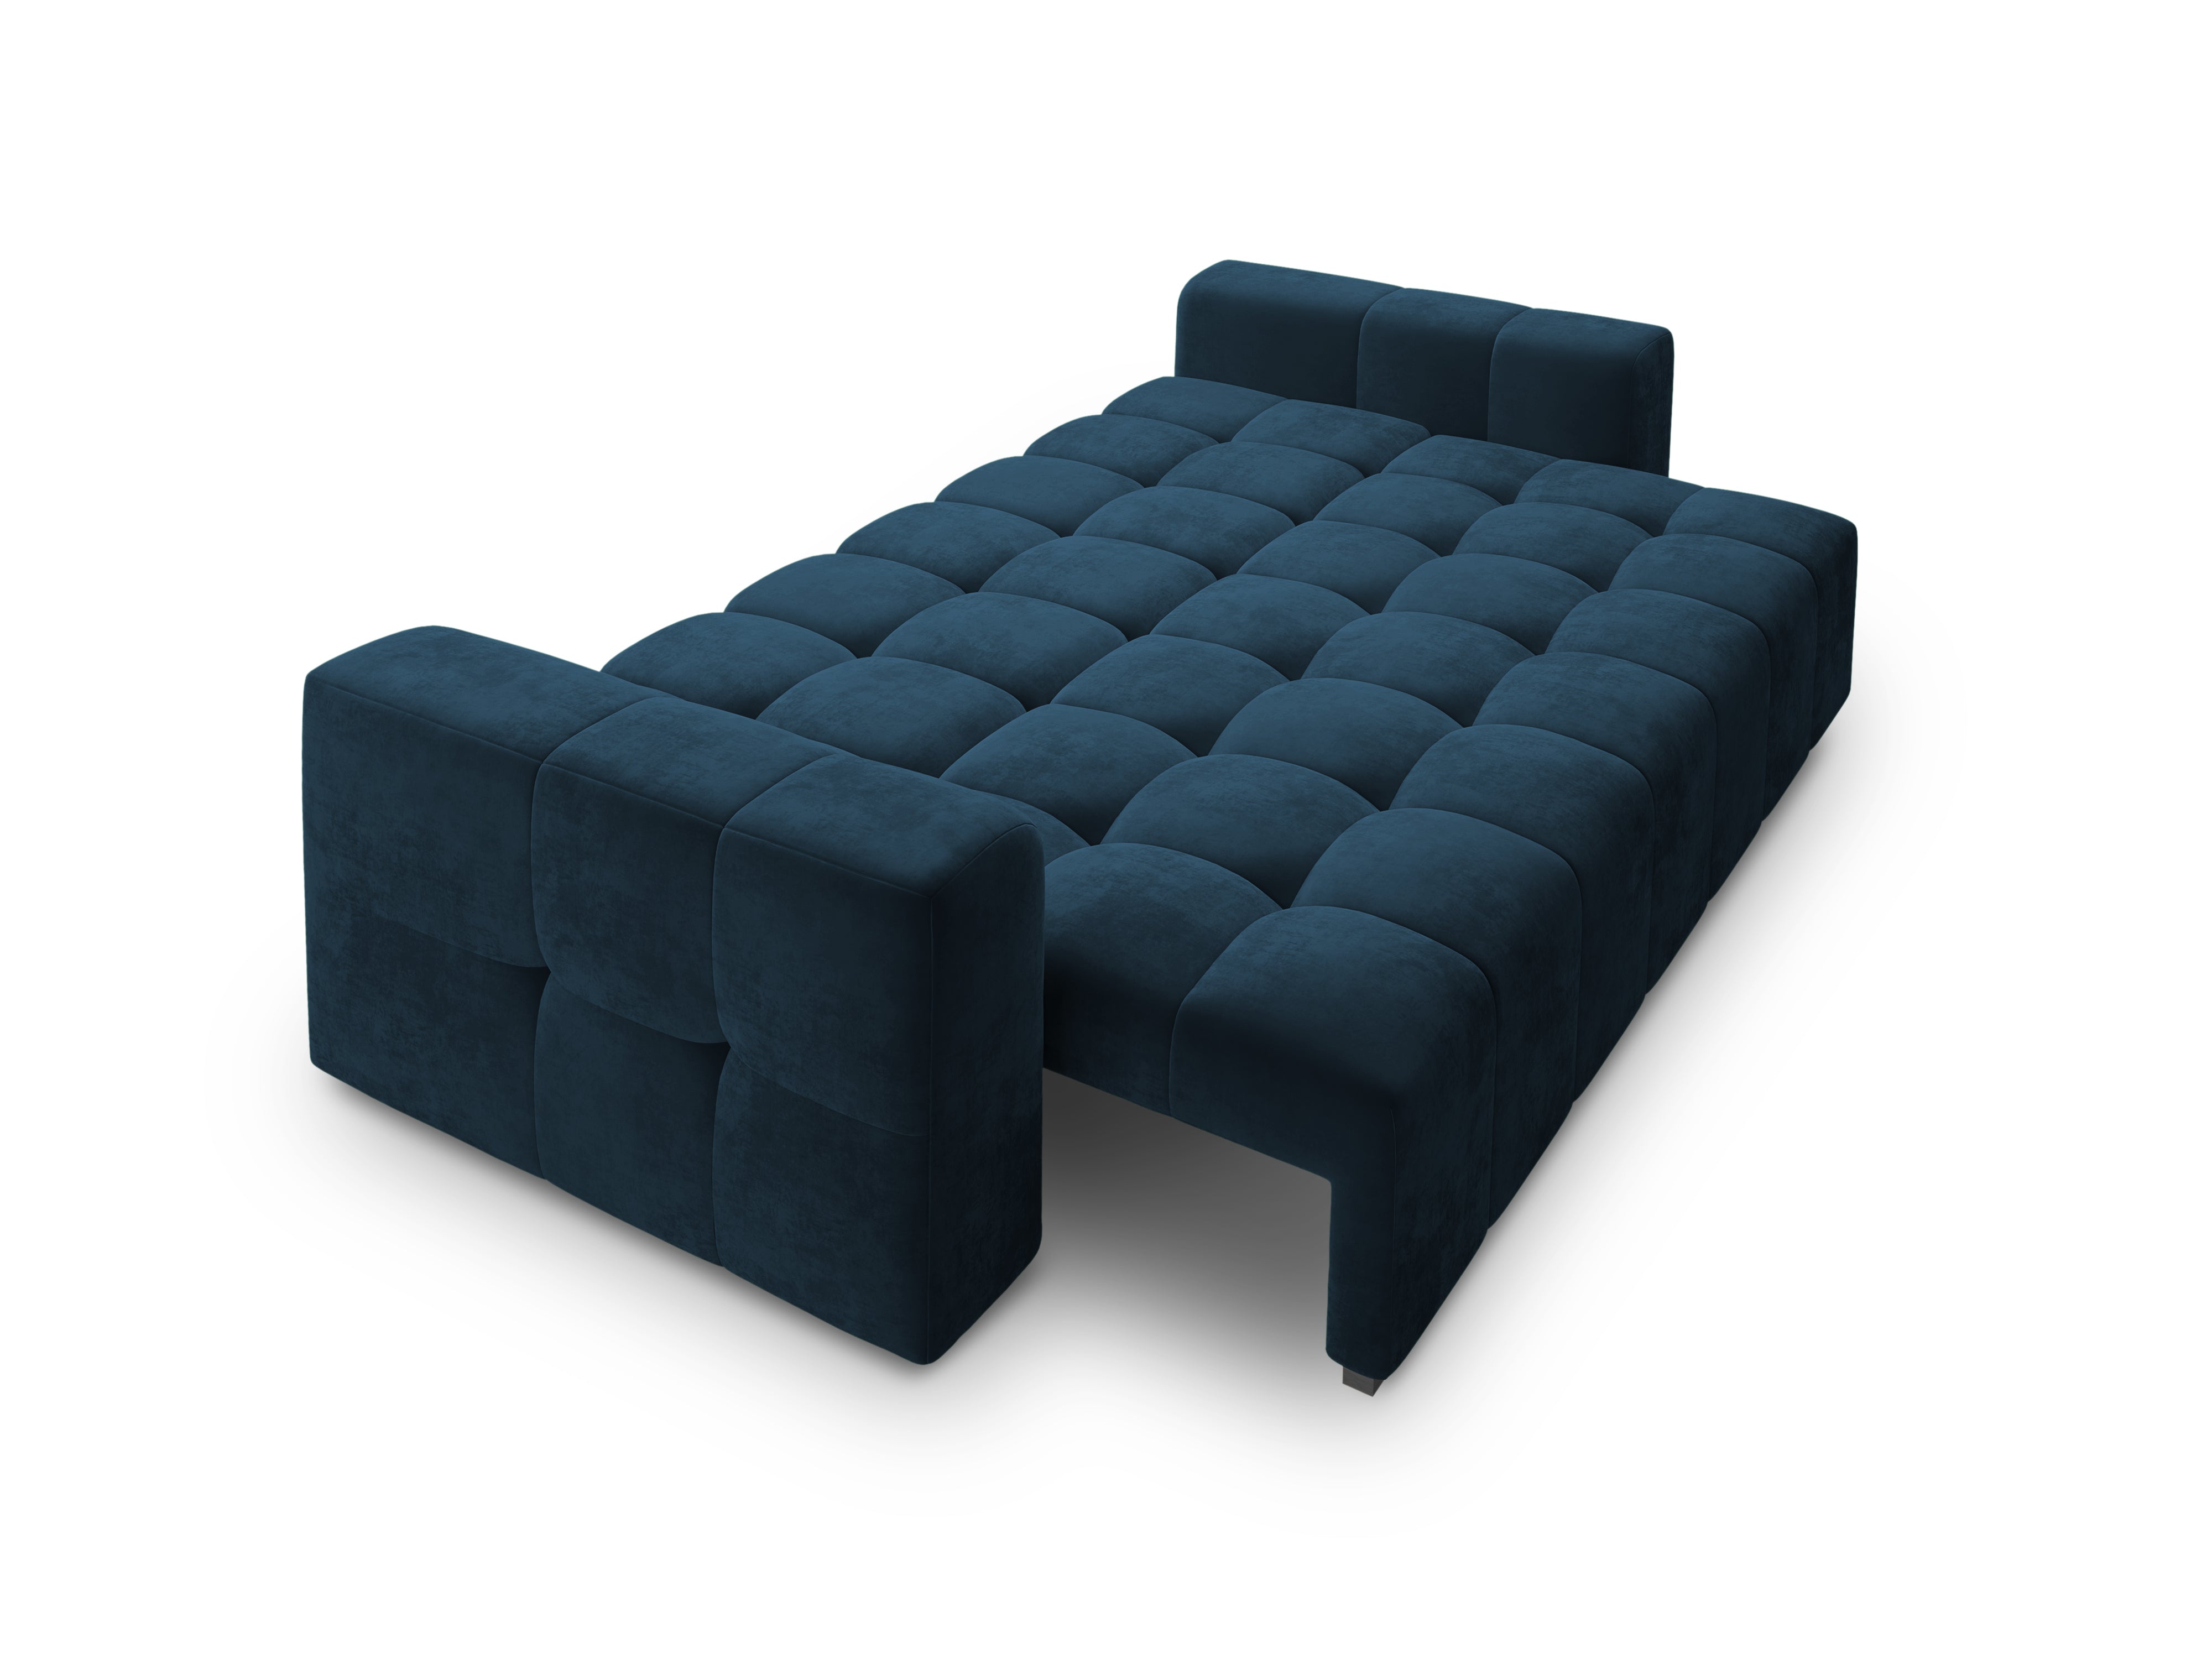 LUCA velvet sofa with sleeping function navy blue